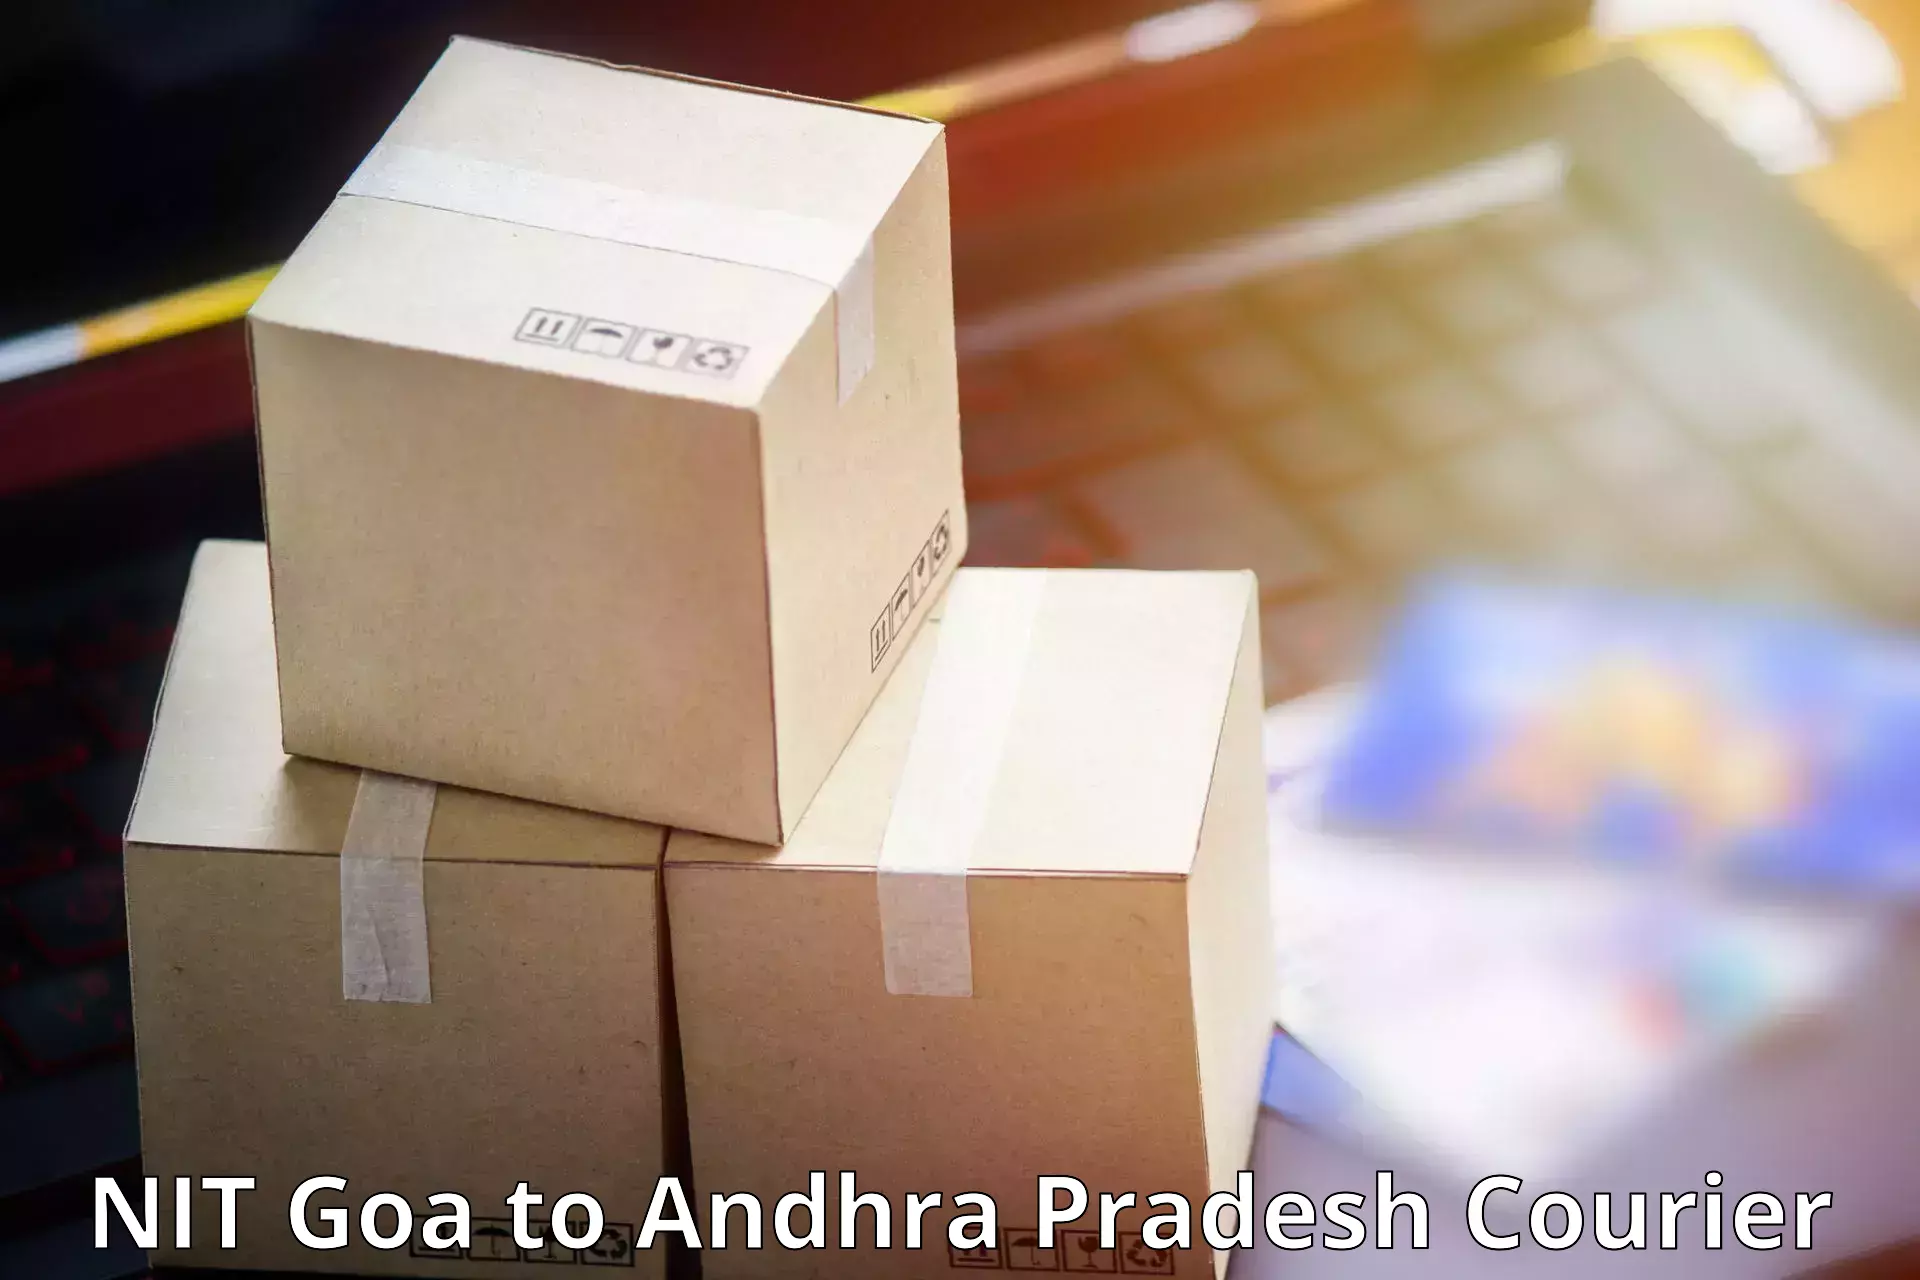 Premium delivery services NIT Goa to Naidupeta